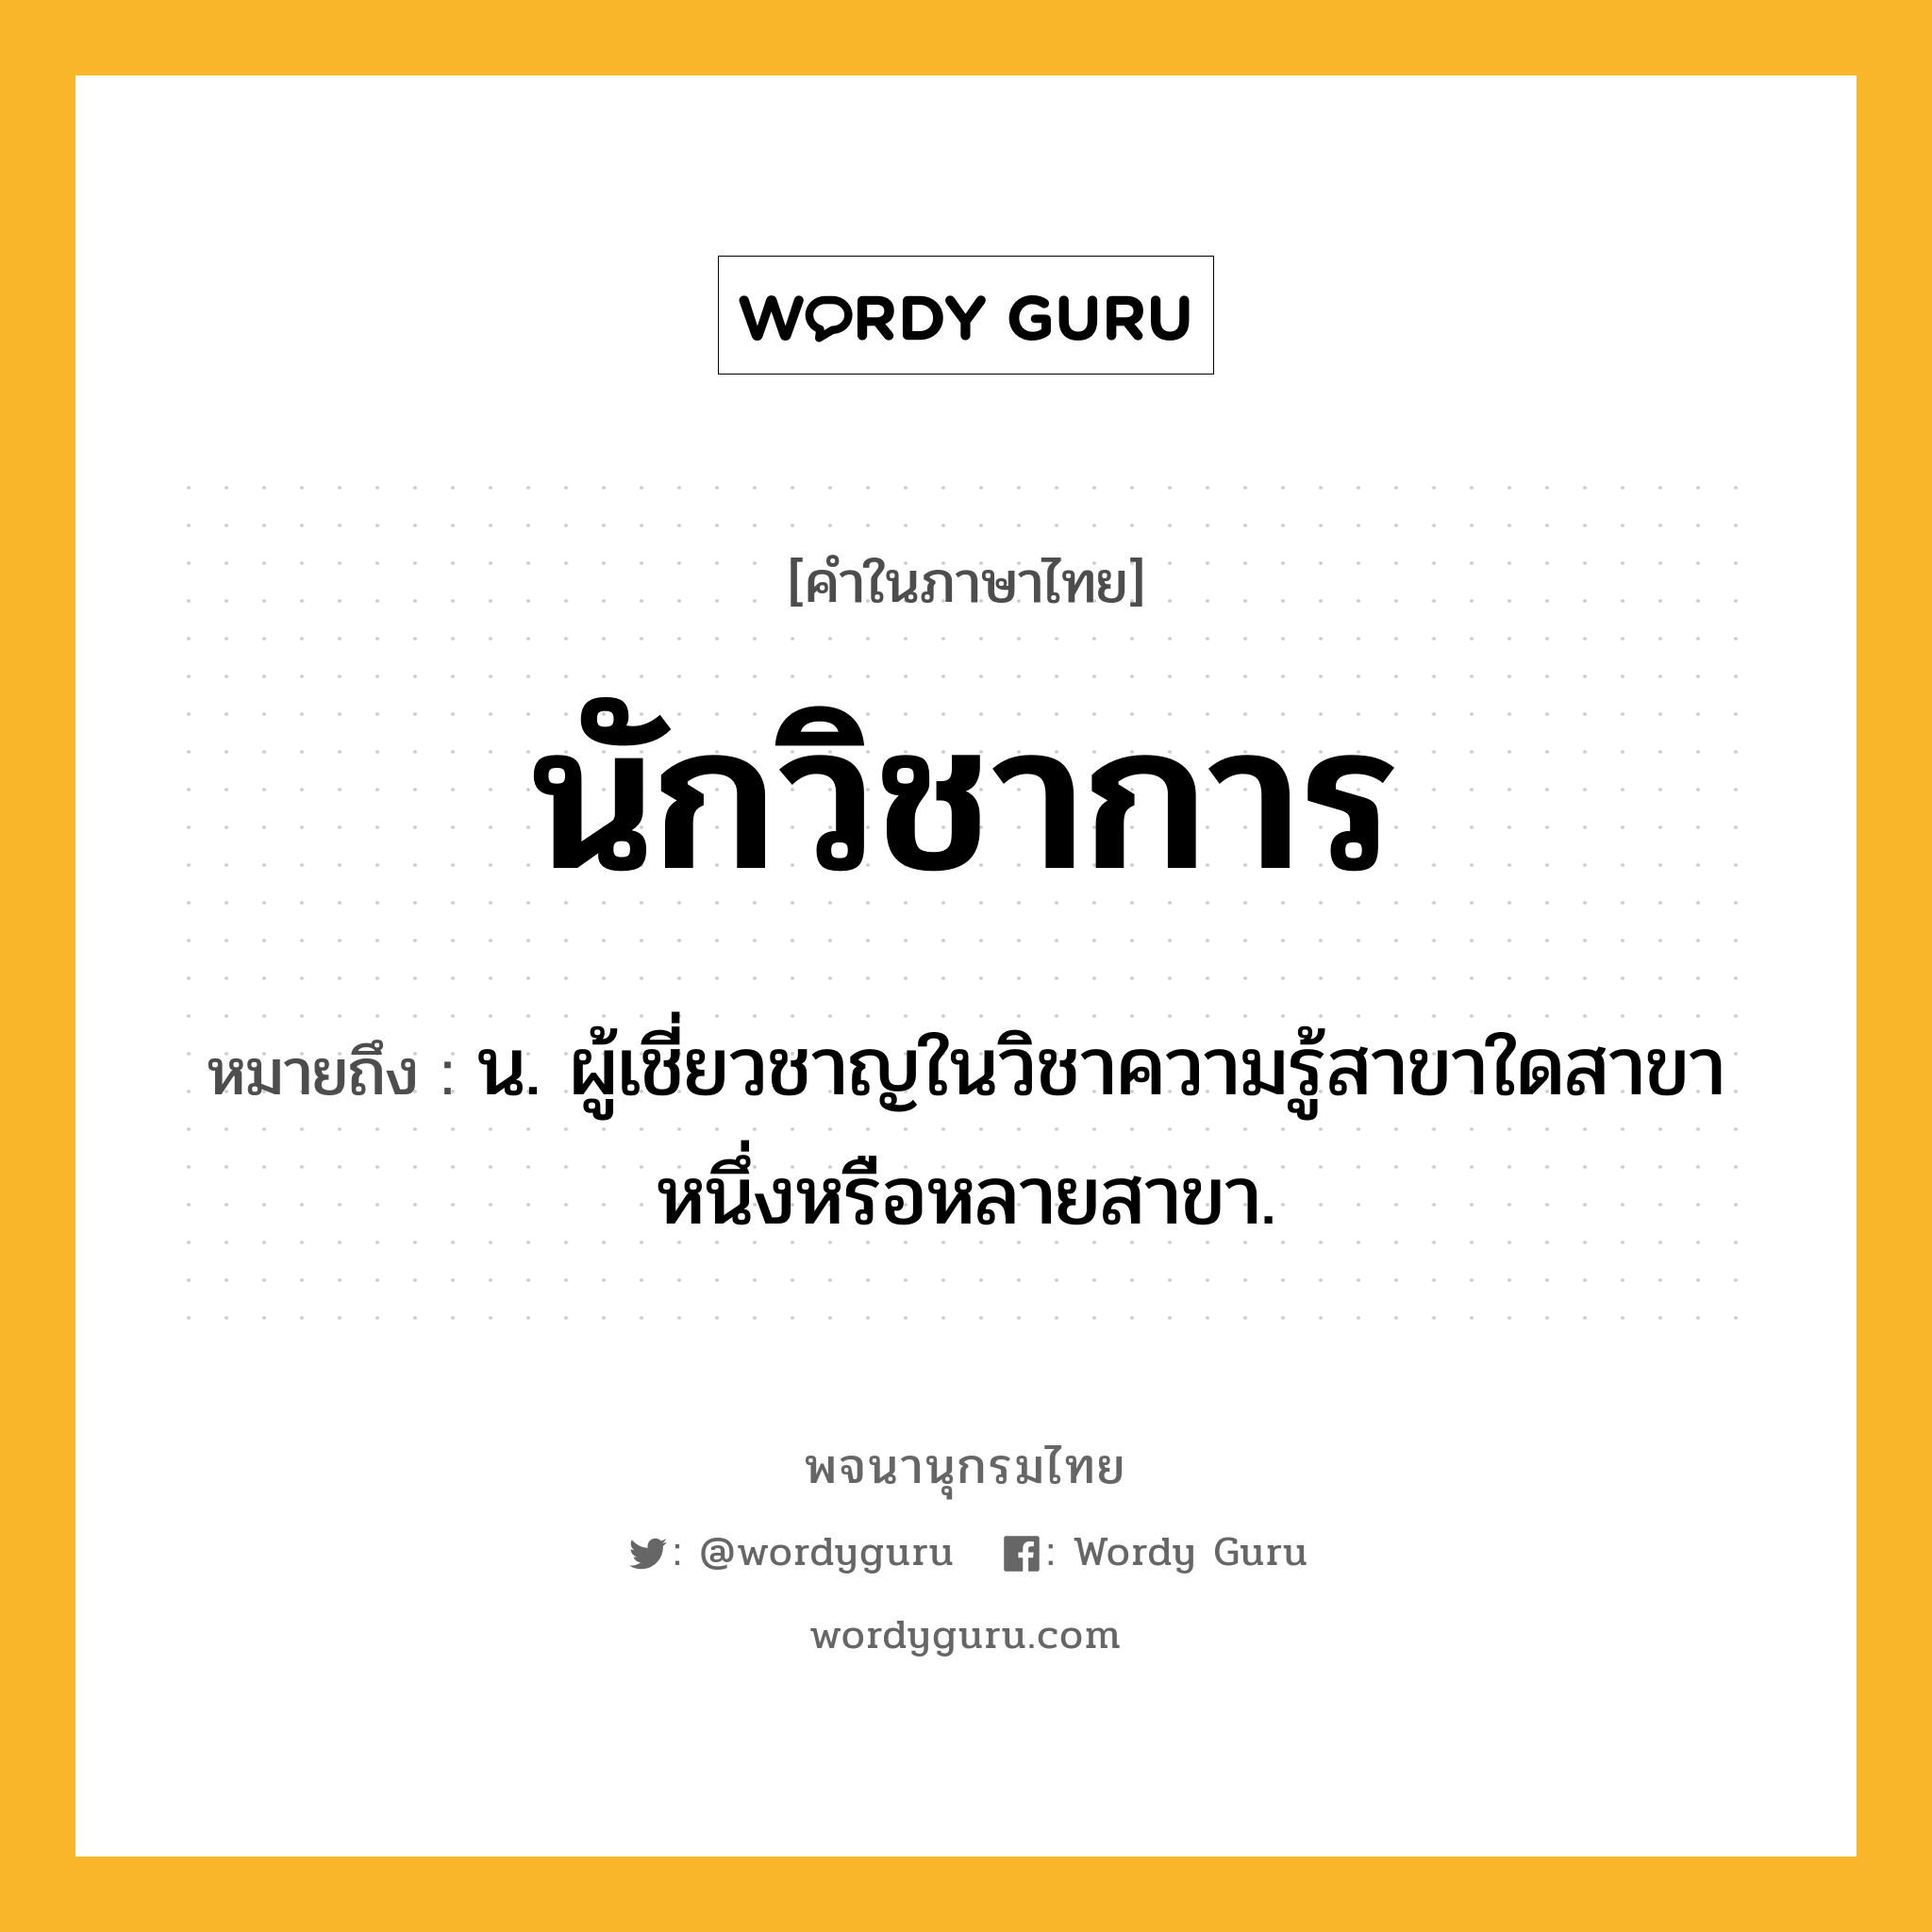 นักวิชาการ ความหมาย หมายถึงอะไร?, คำในภาษาไทย นักวิชาการ หมายถึง น. ผู้เชี่ยวชาญในวิชาความรู้สาขาใดสาขาหนึ่งหรือหลายสาขา.